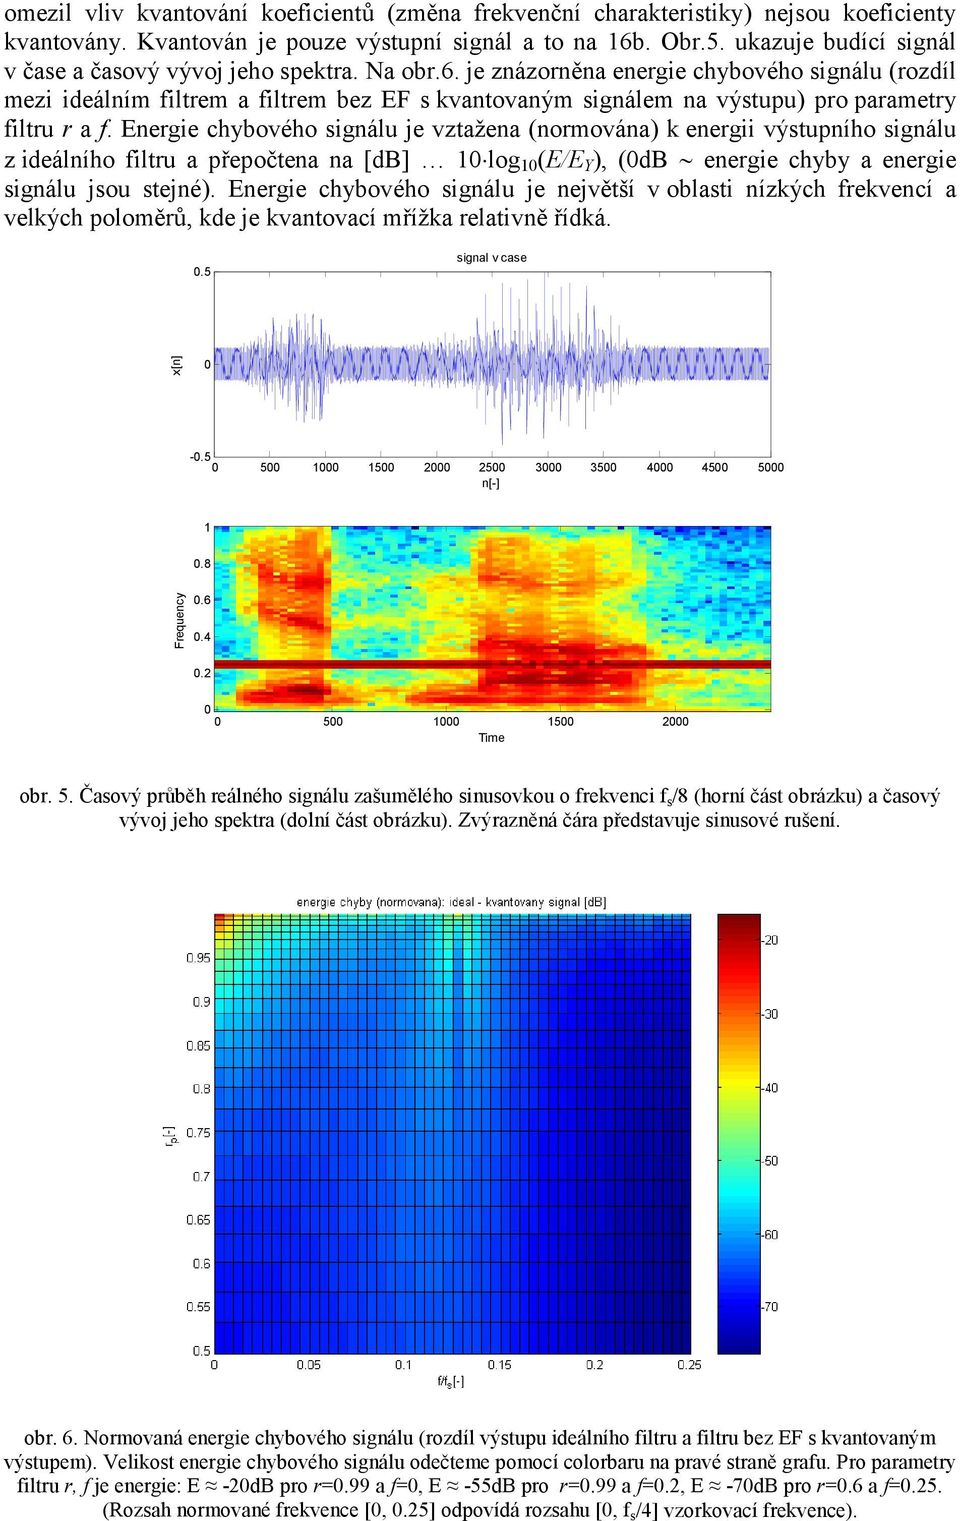 je znázornna energie chybového signálu (rozdíl mezi ideálním filtrem a filtrem bez EF s kvantovaným signálem na výstupu) pro parametry filtru r a f.